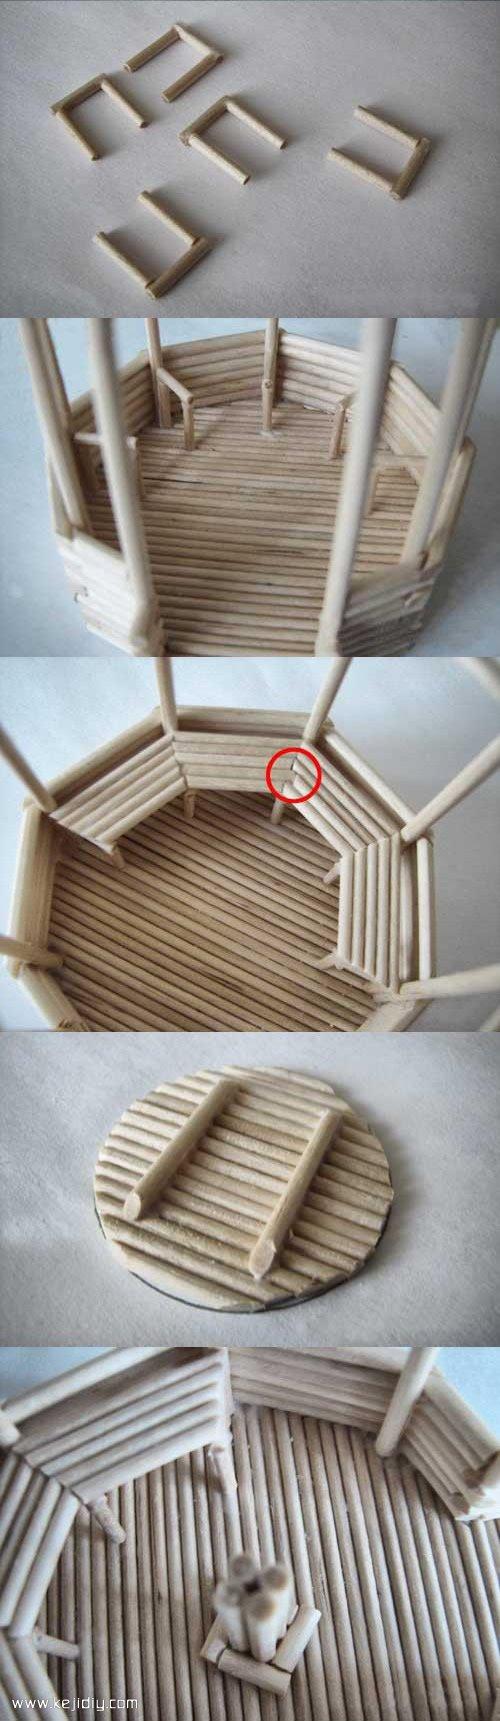 竹签或一次性筷子手工制作凉亭模型